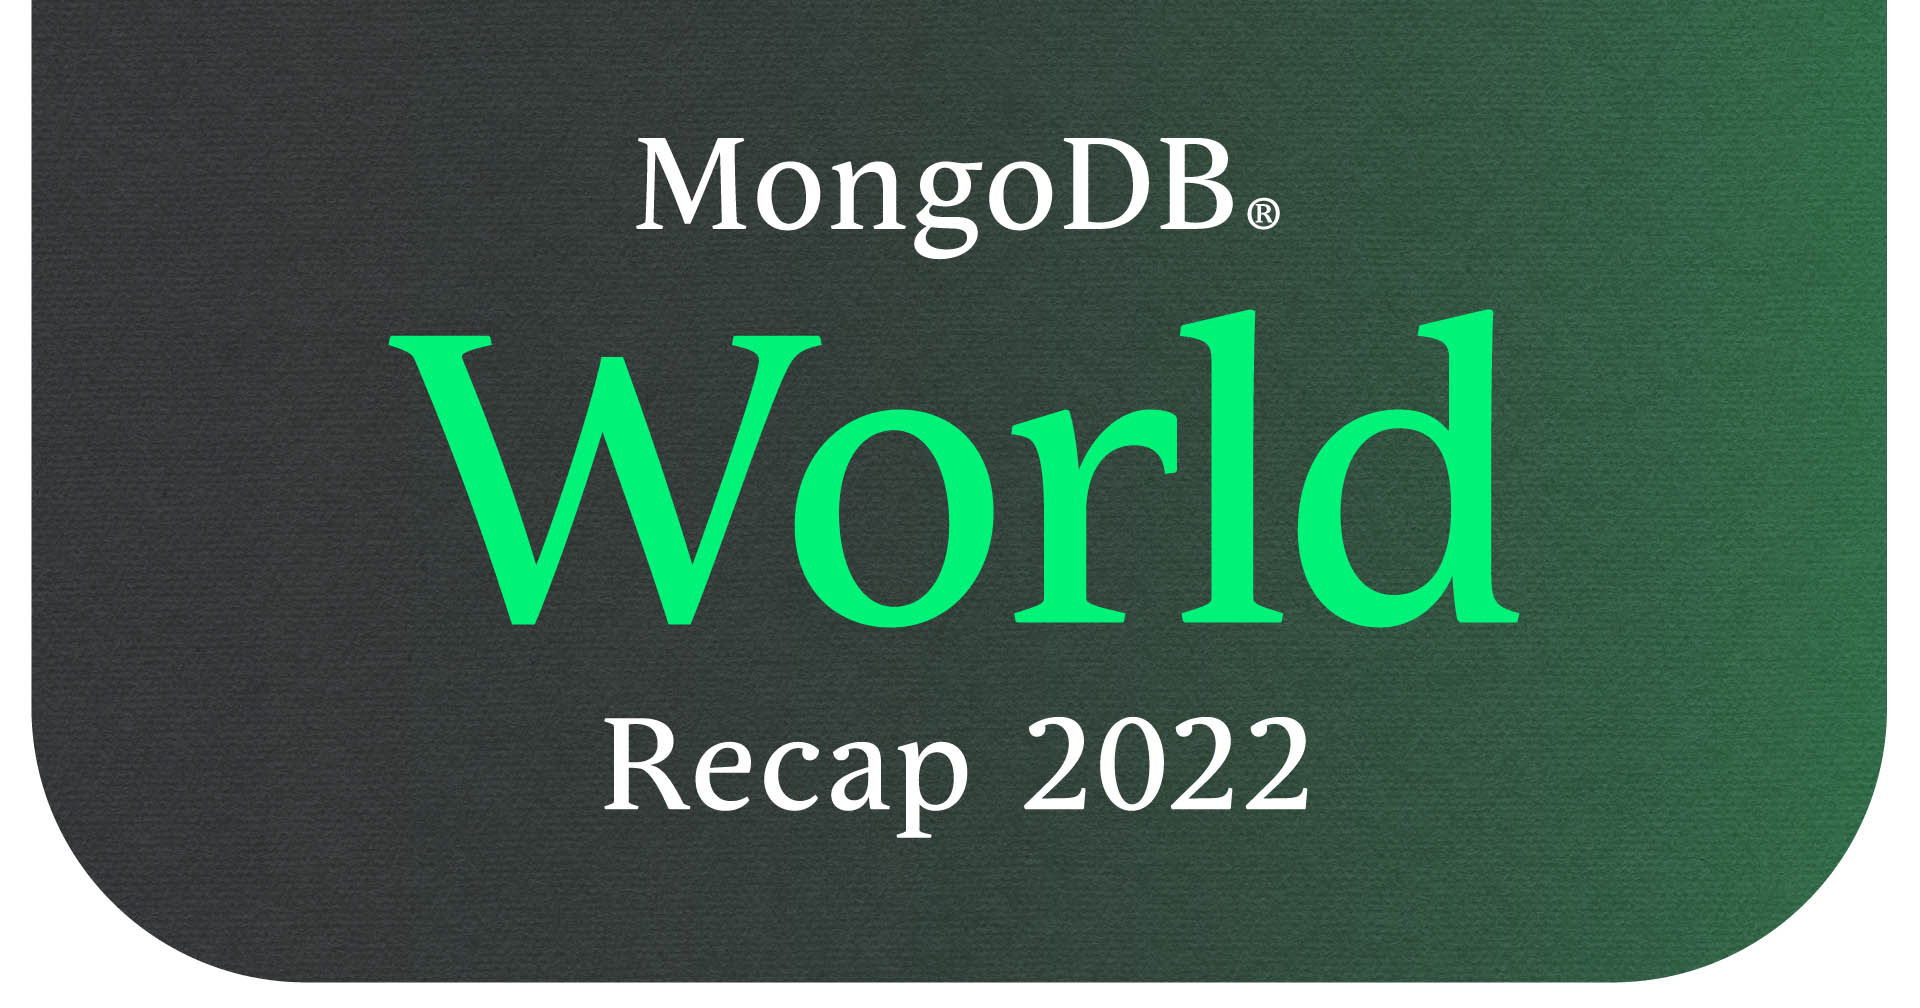 mongodbWorldRecap22-blogHeader